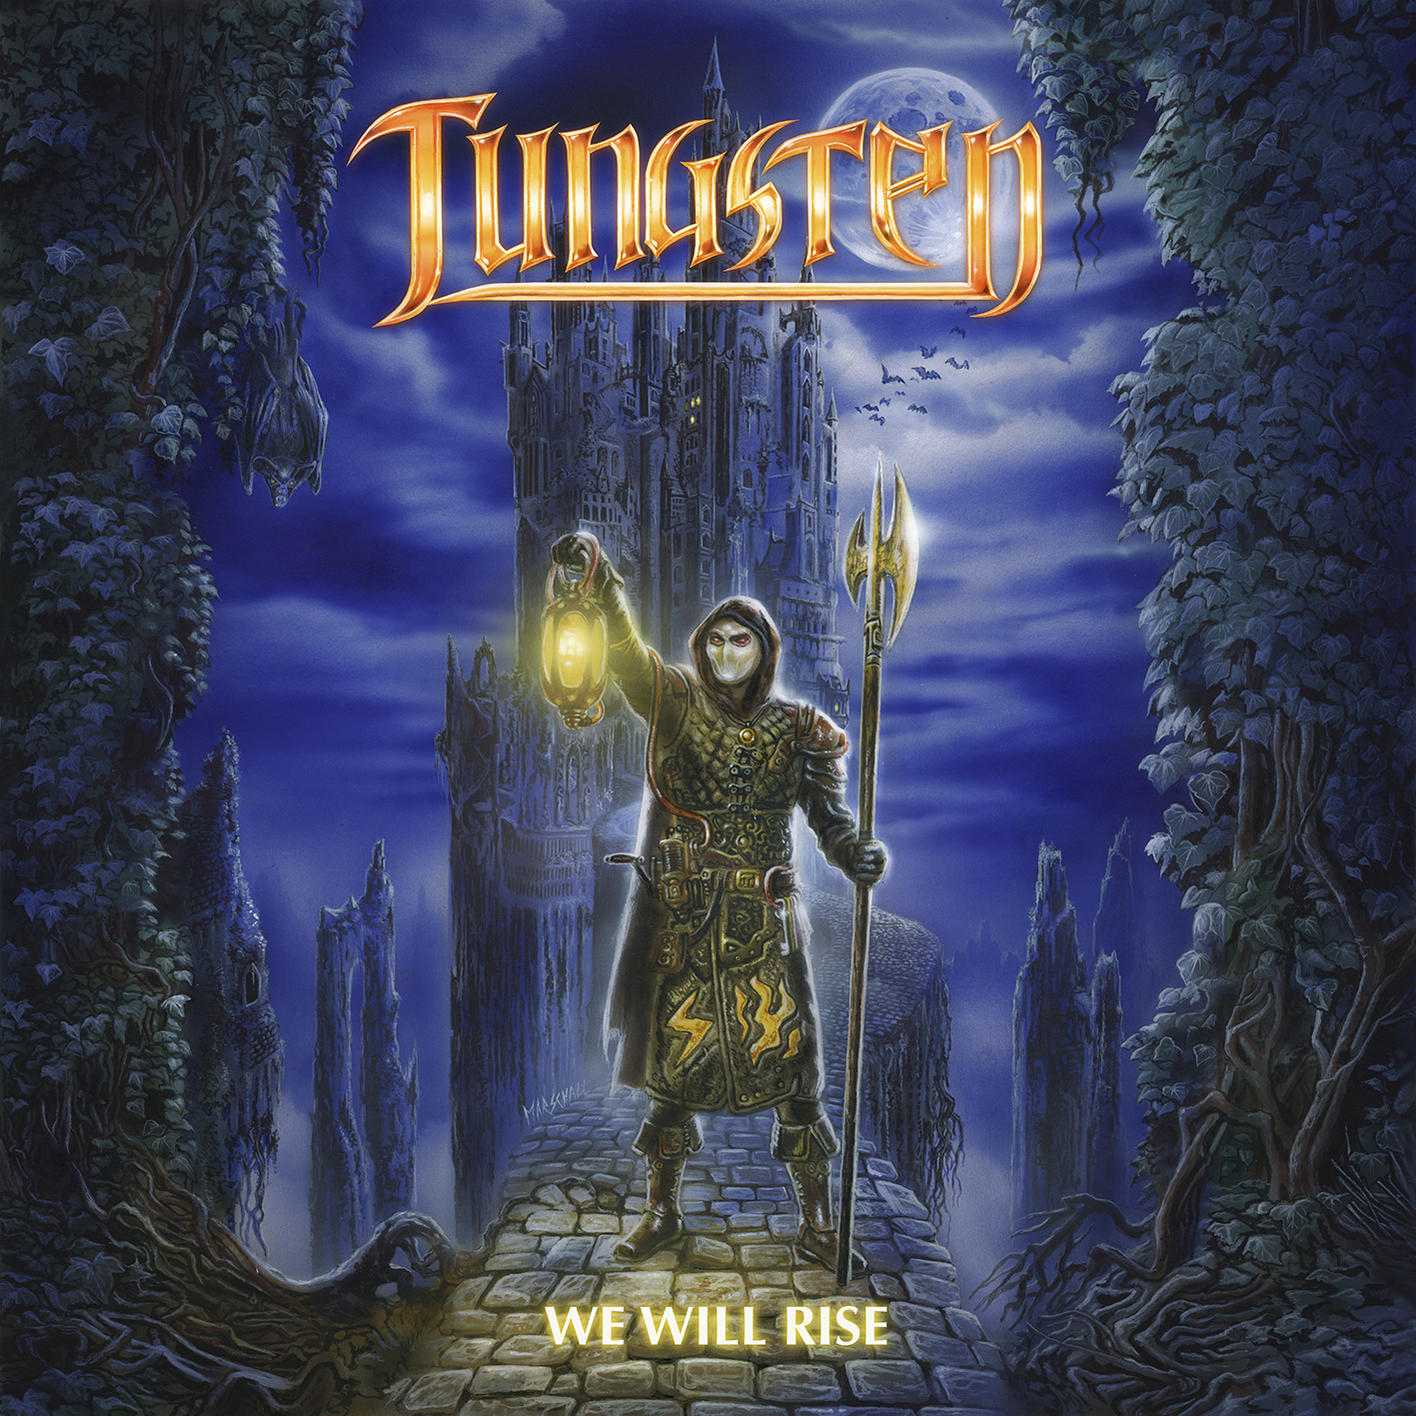 Tungsten - We Will Rise (Vinyl) 